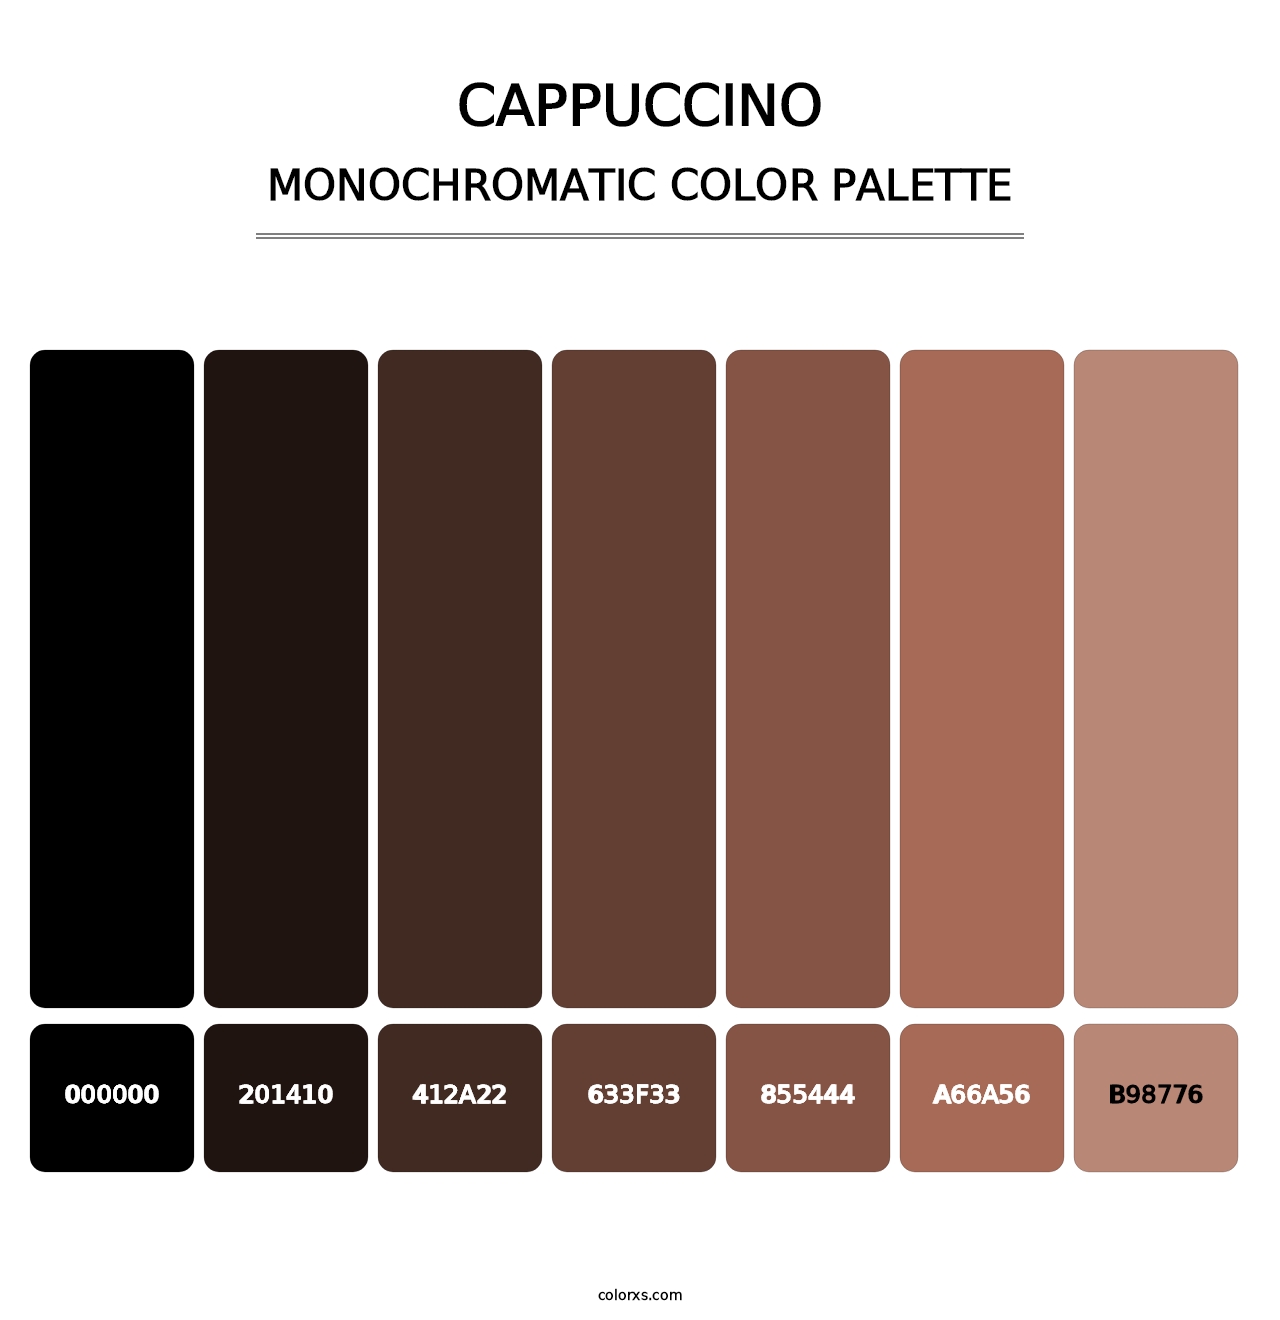 Cappuccino - Monochromatic Color Palette